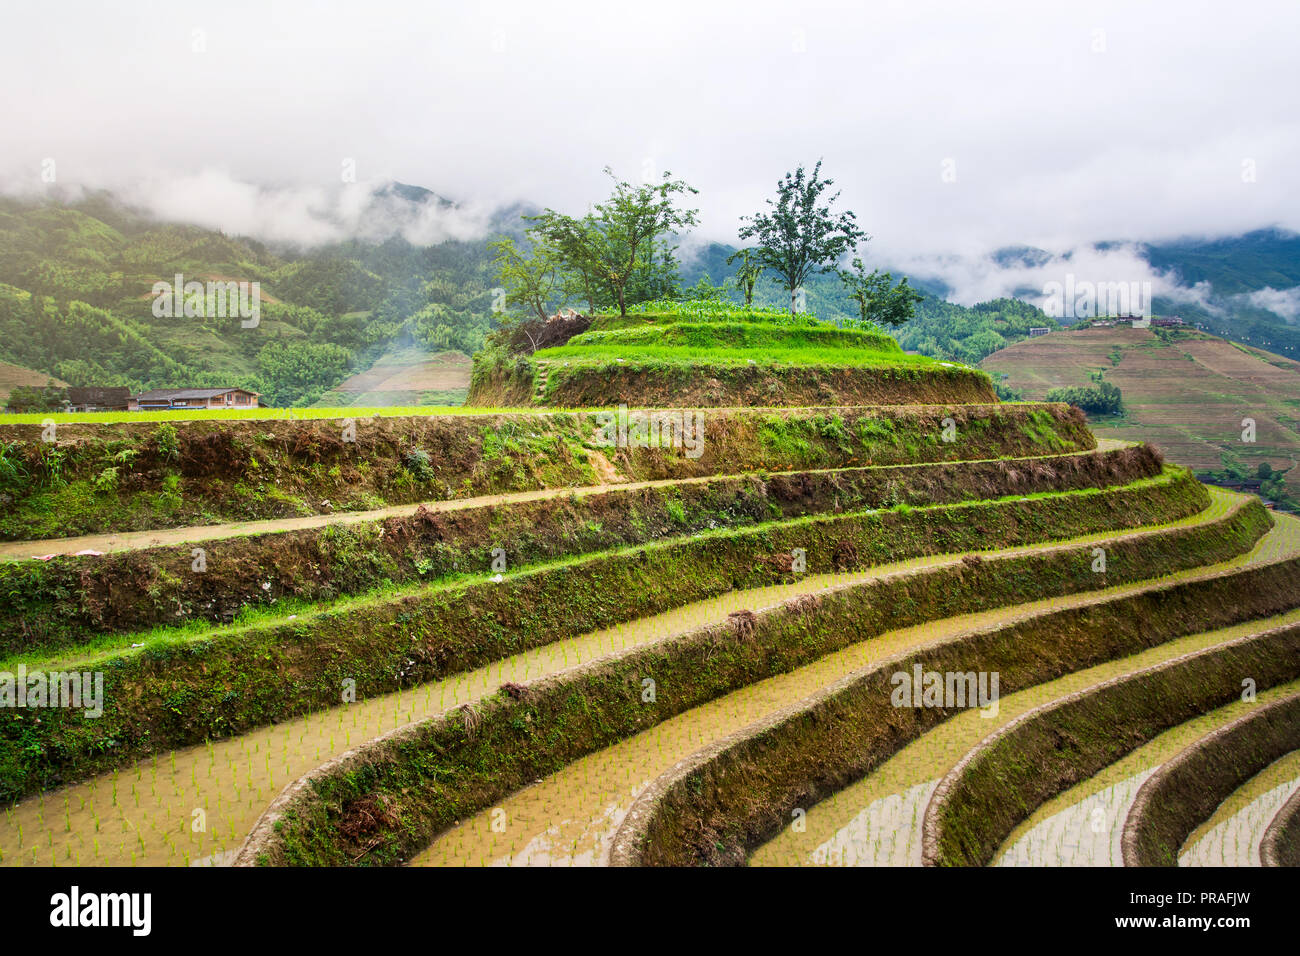 Asiatische Reis terrasse Landschaft in China an einem bewölkten Tag Stockfoto